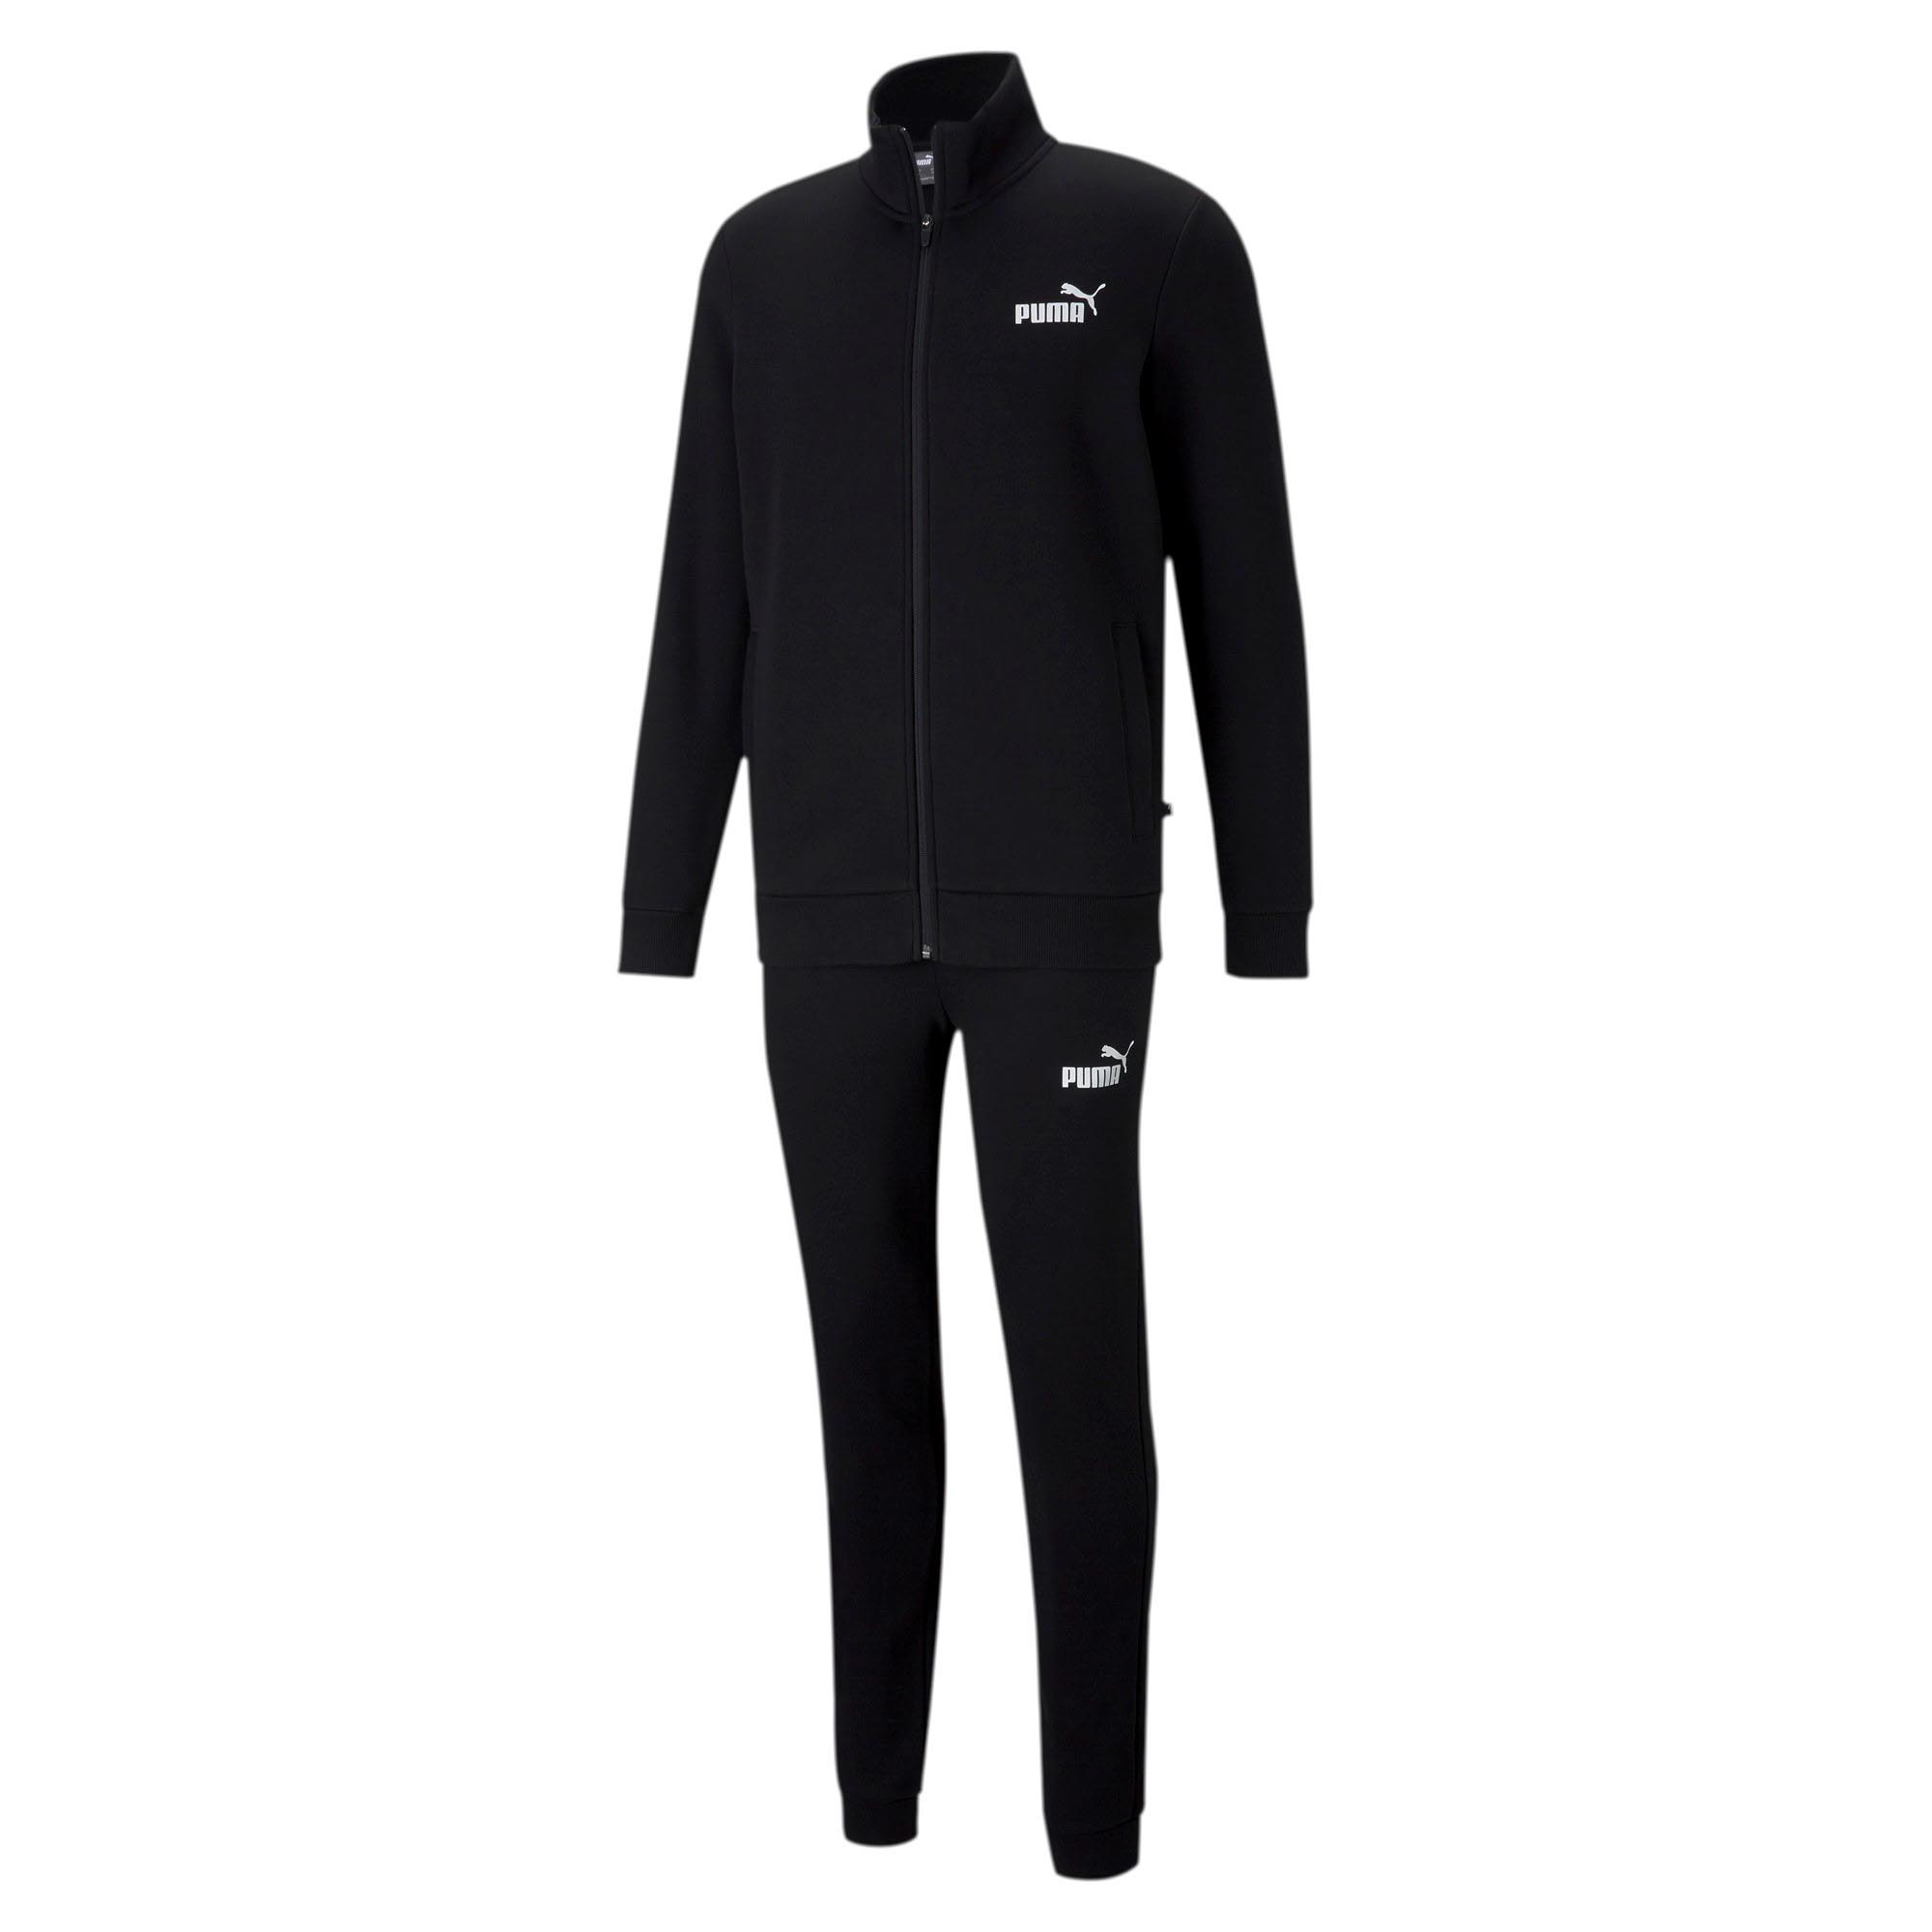 PUMA Herren Clean Sweat Suit FL Trainingsanzug Jogginganzug 585841 schwarz